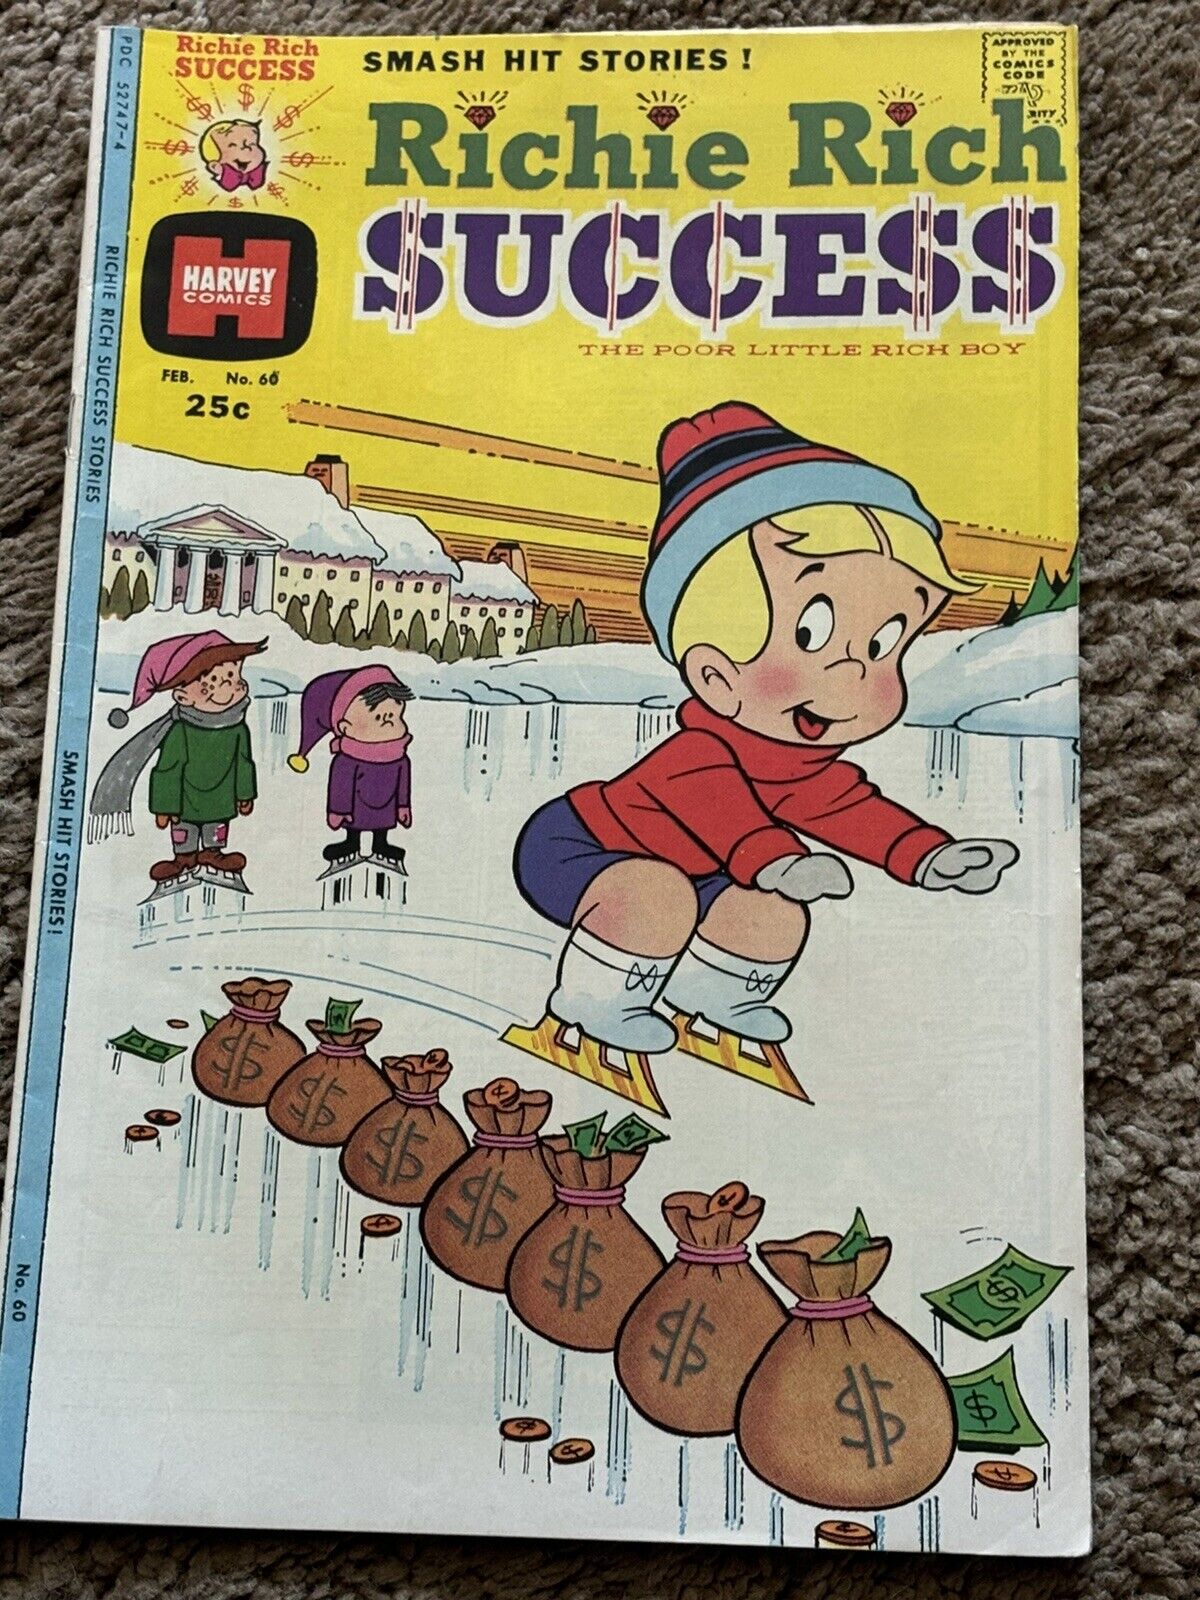 VINTAGE RICHIE RICH SUCCESS COMIC BOOK #60 1975